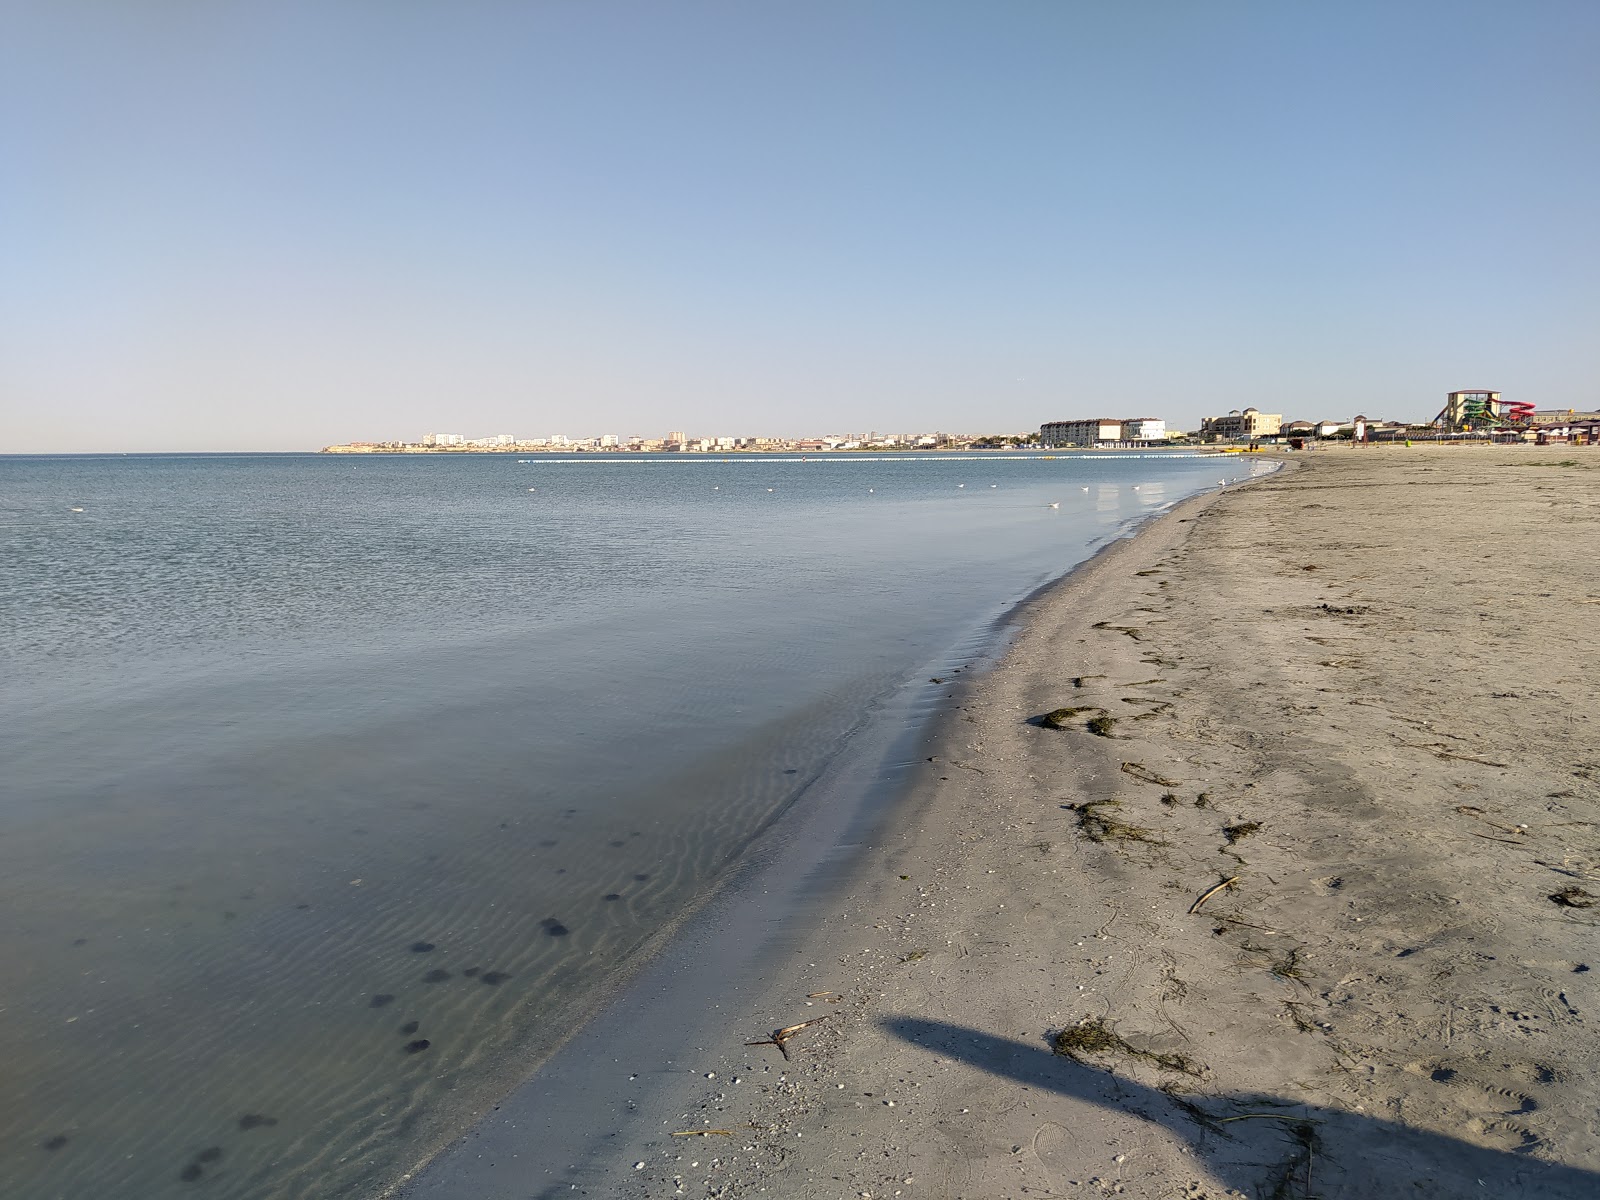 Foto af Dostar Beach - populært sted blandt afslapningskendere